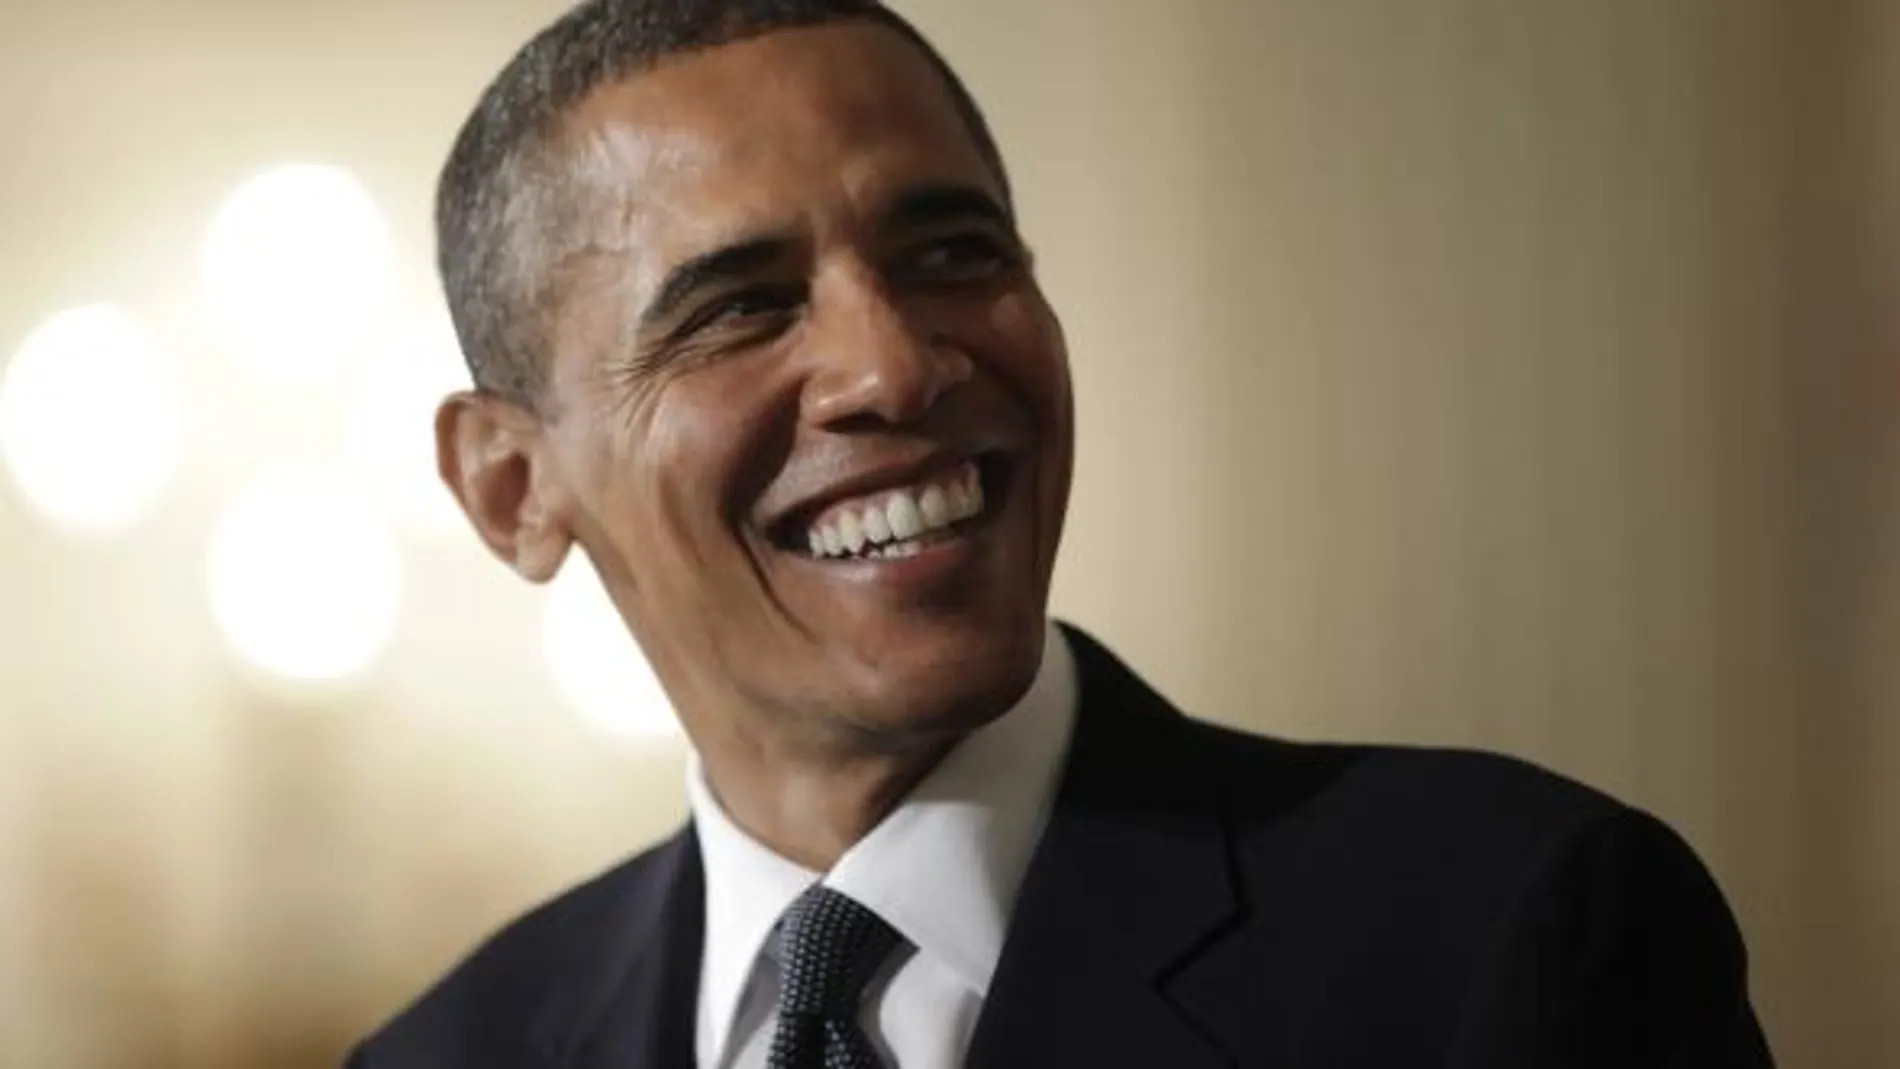 Obama estará en la cumbre el día 20 de noviembre en Lisboa